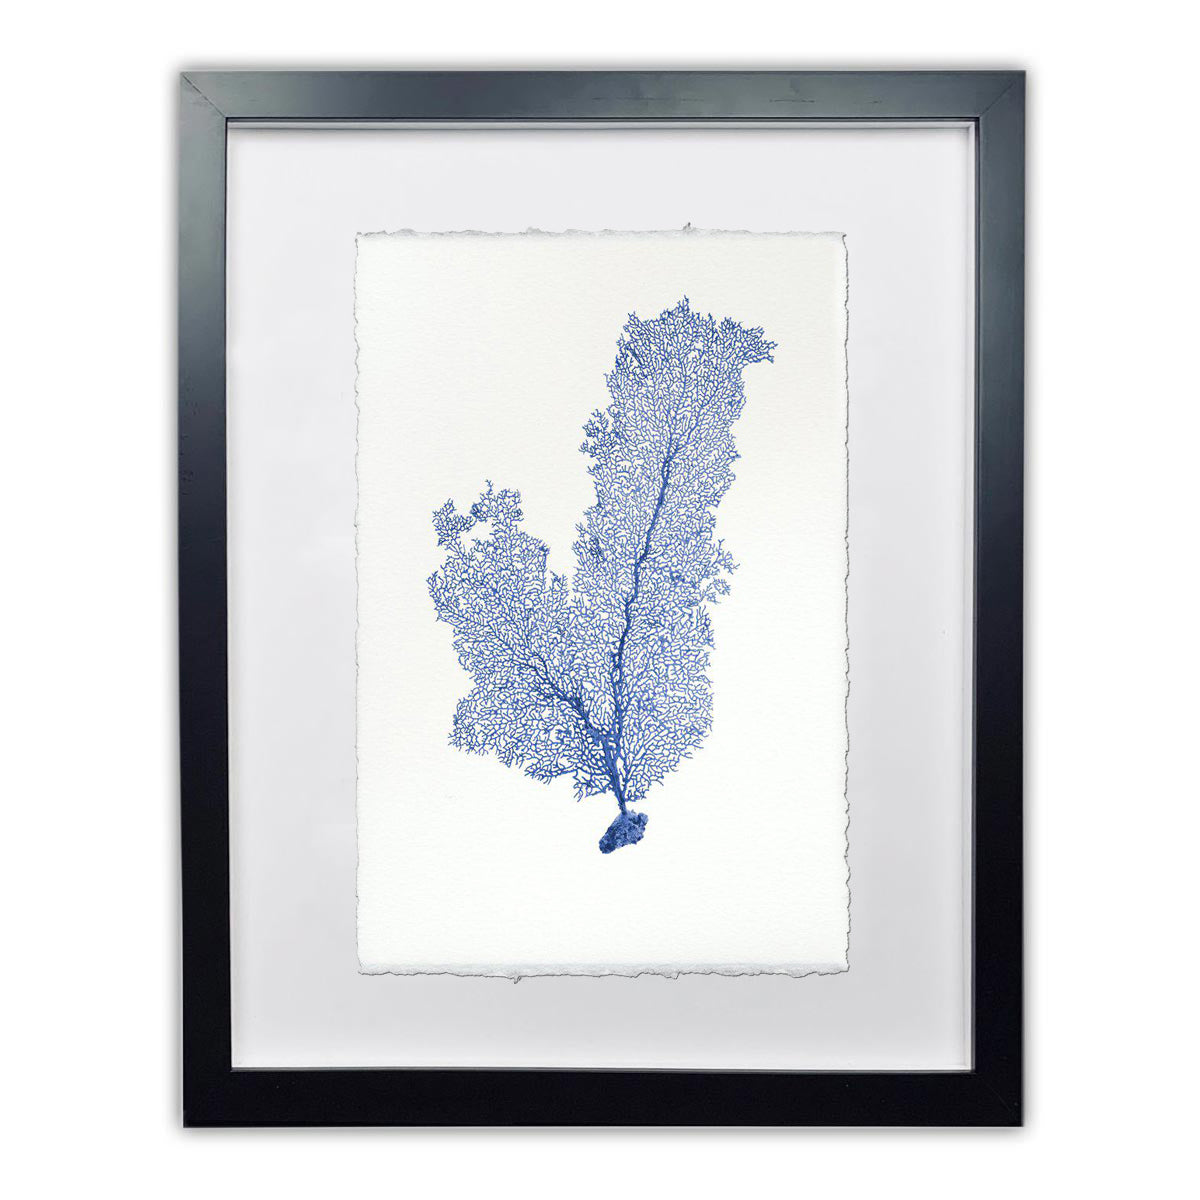 Tall Sea fan blue framed handmade paper wall art print 9"x14"